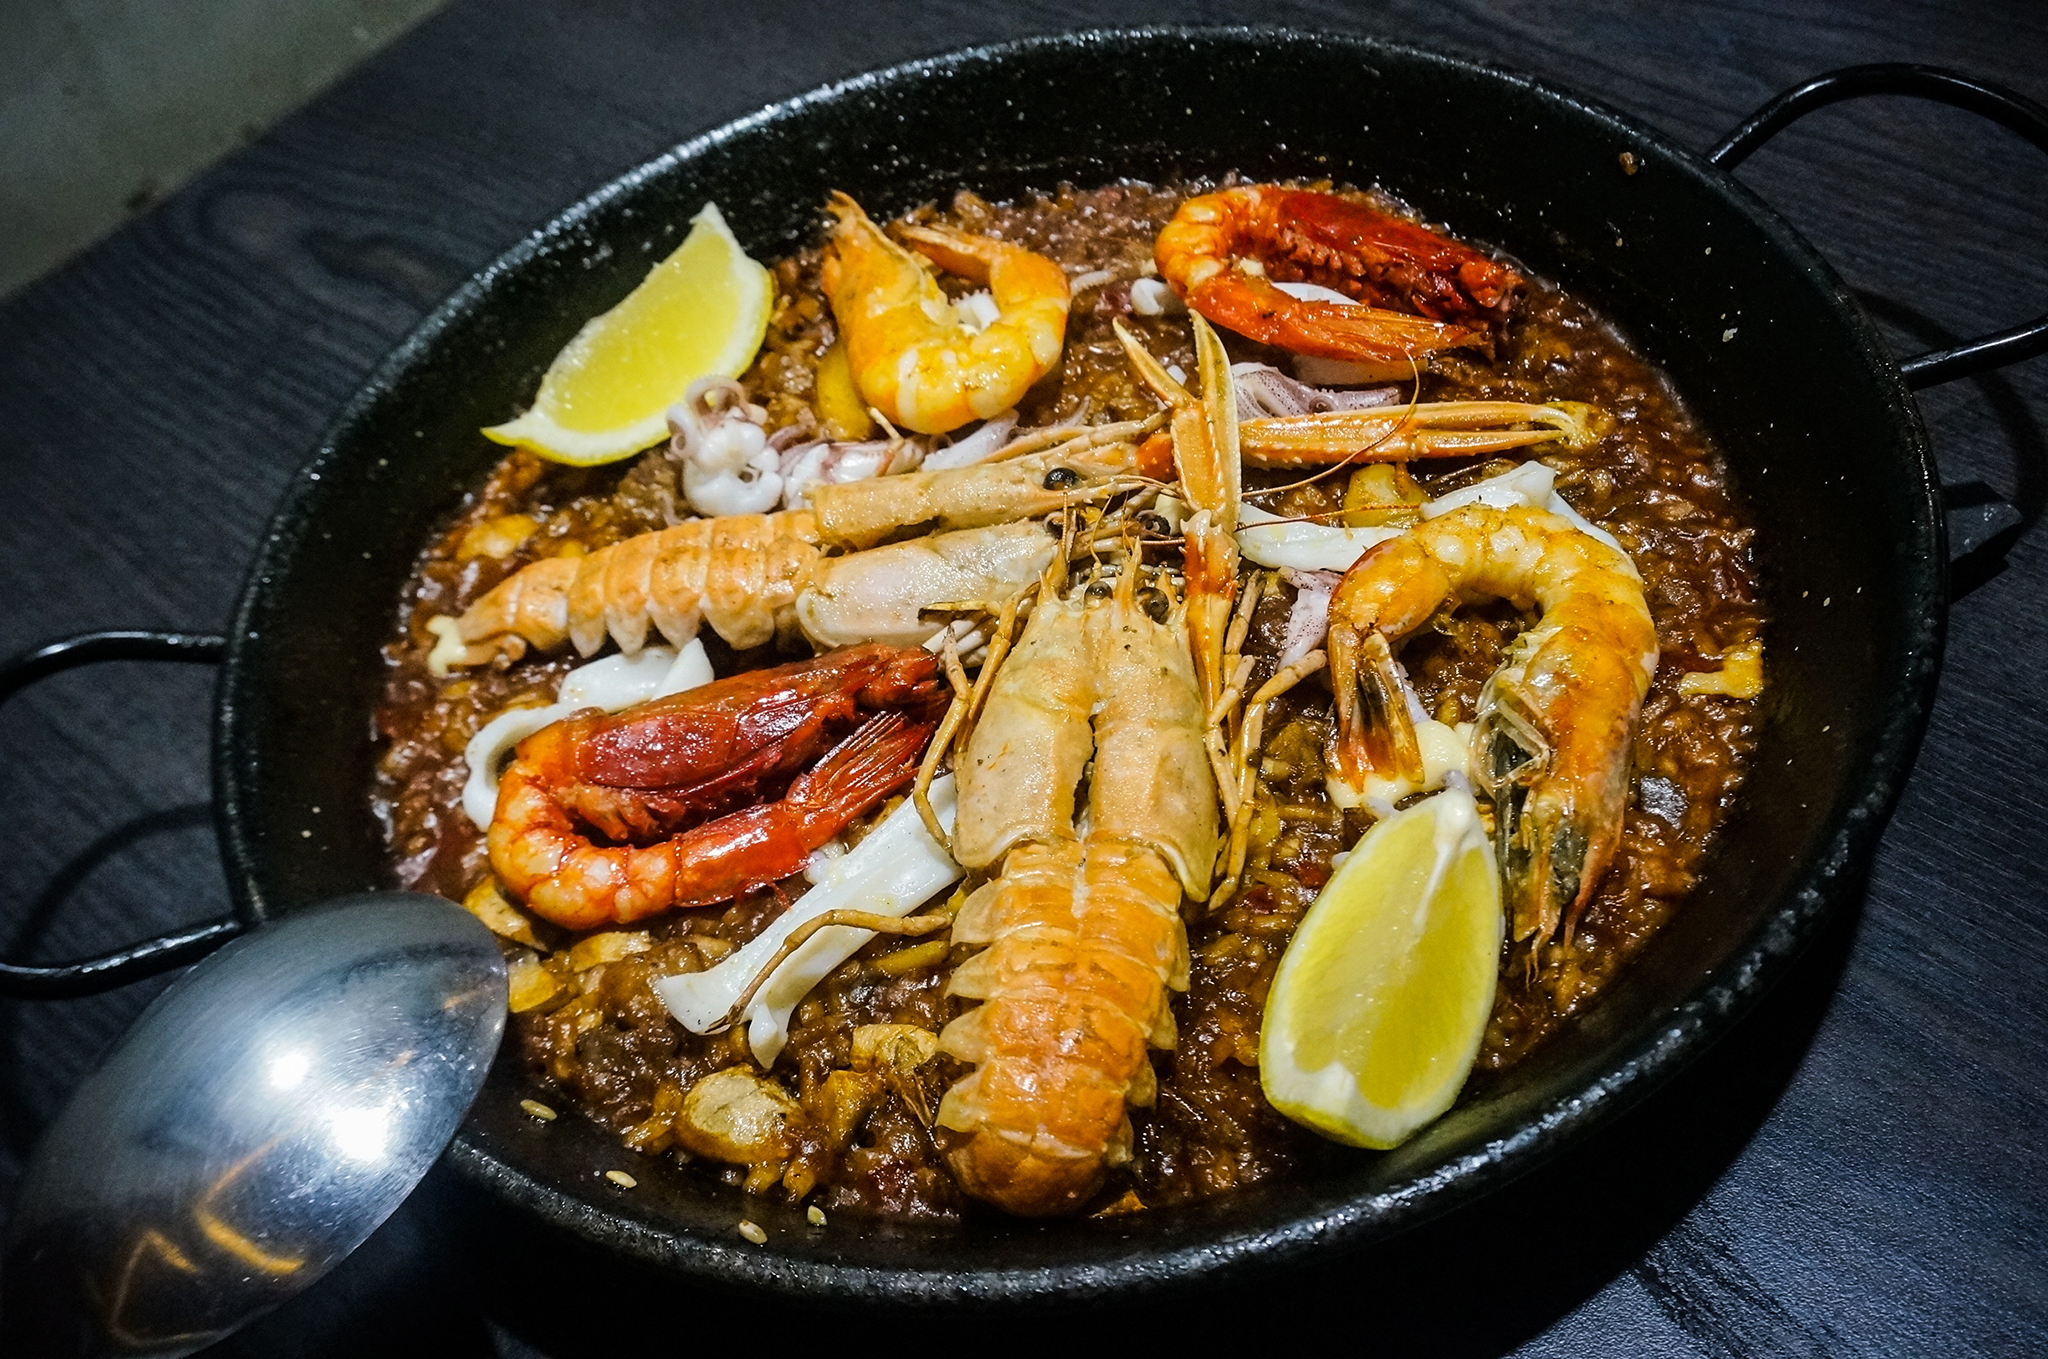 Bar Celona, Tapas and Rice | Da Catalunha a Macau